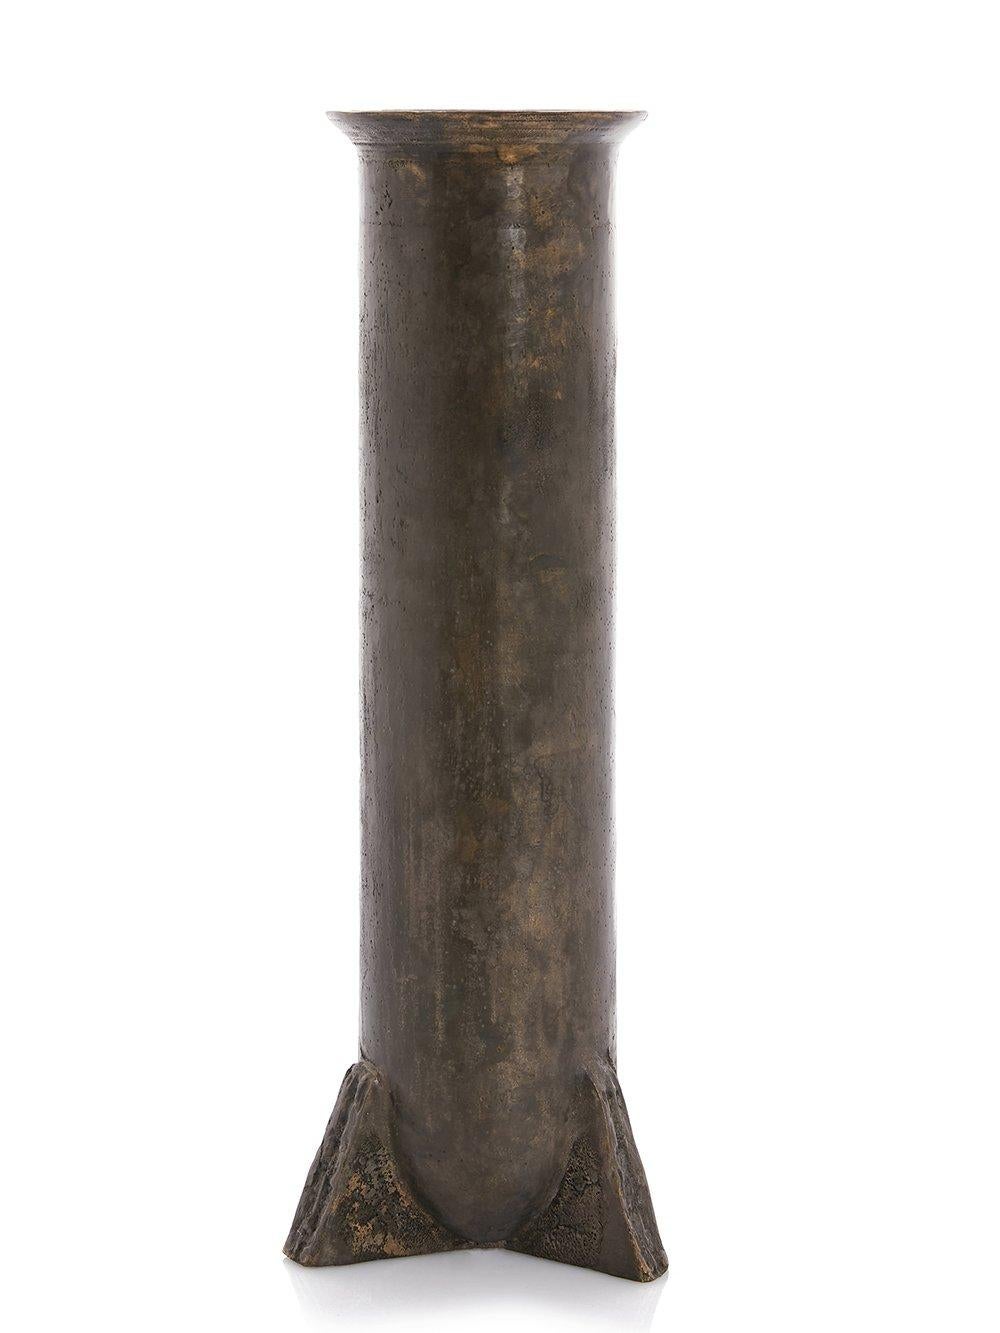 Zeitgenössische Bronzevase - Urnette von Rick Owens
2007
Abmessungen: L 19 x B 19 x H 52 cm
MATERIALIEN: Bronze
Gewicht: 11 kg

Erhältlich in schwarzer und nitratfarbener Ausführung (dunkelbraun).

Rick Owens ist ein in Kalifornien geborener